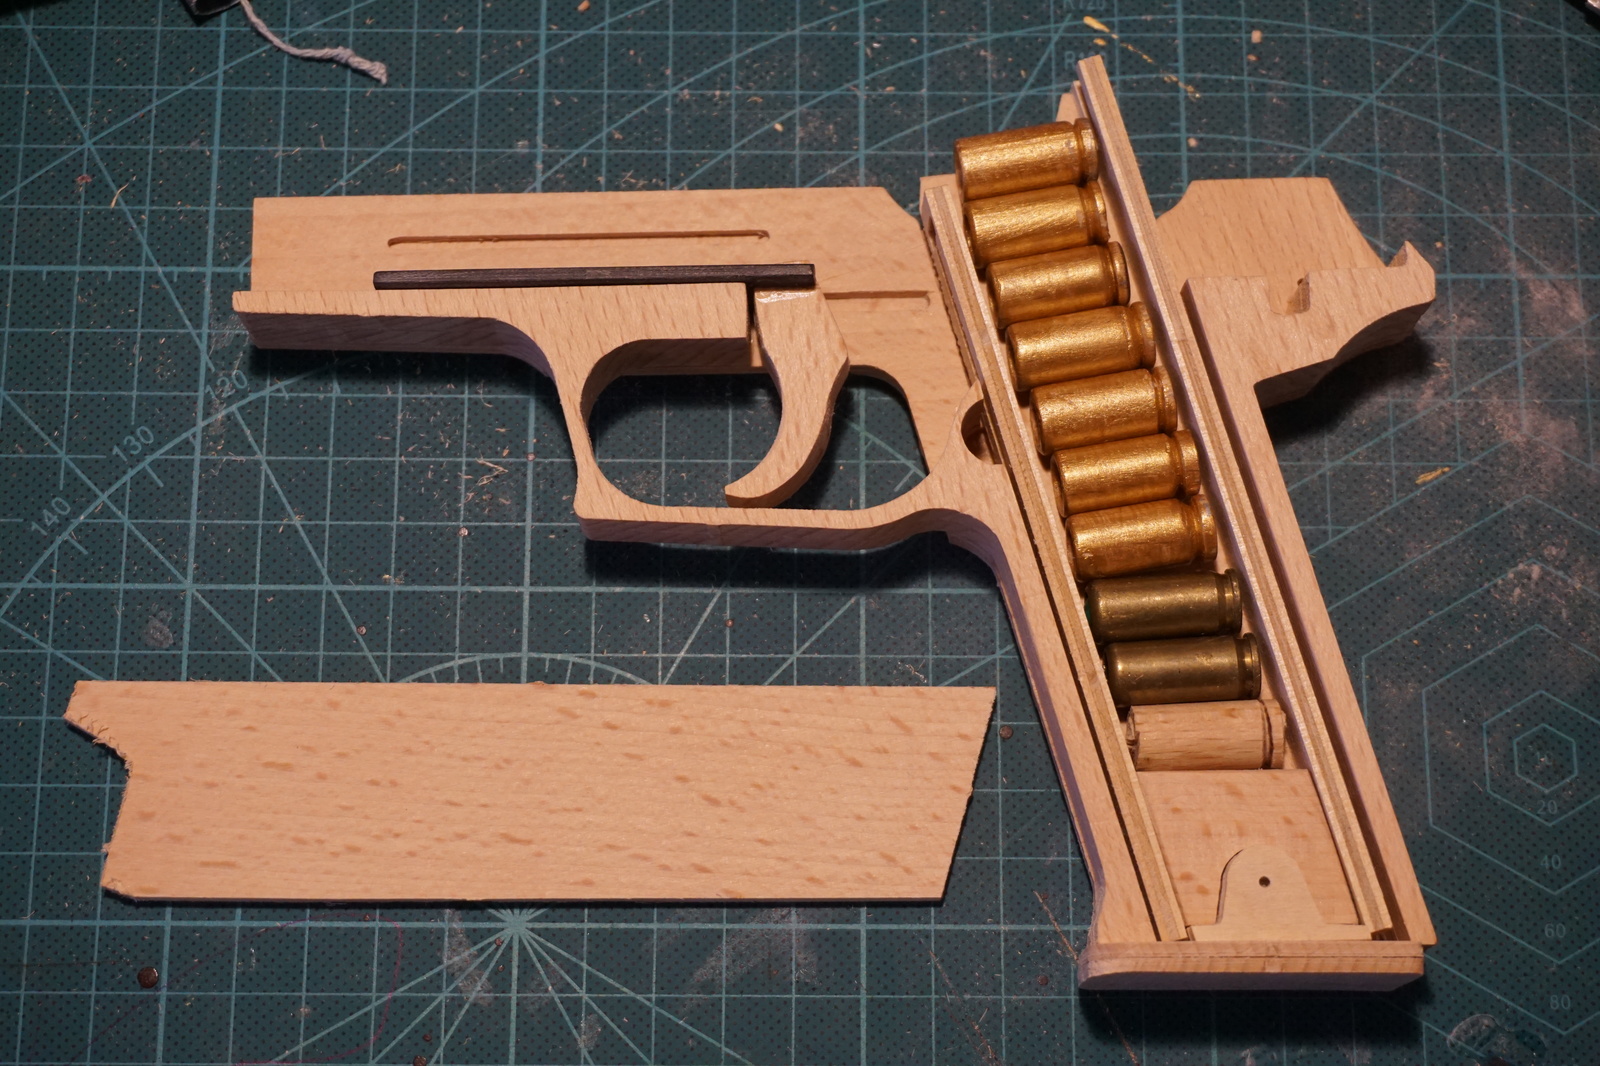 Пистолет SigSauer P226 из дерева можно, больше, резинками, почти, сделано, начало, коробить, Возможна, конструкцию, инструкции, оказлся, фатален, полная, разборка, Источник, производство, своего, работает, Видео, прототипа